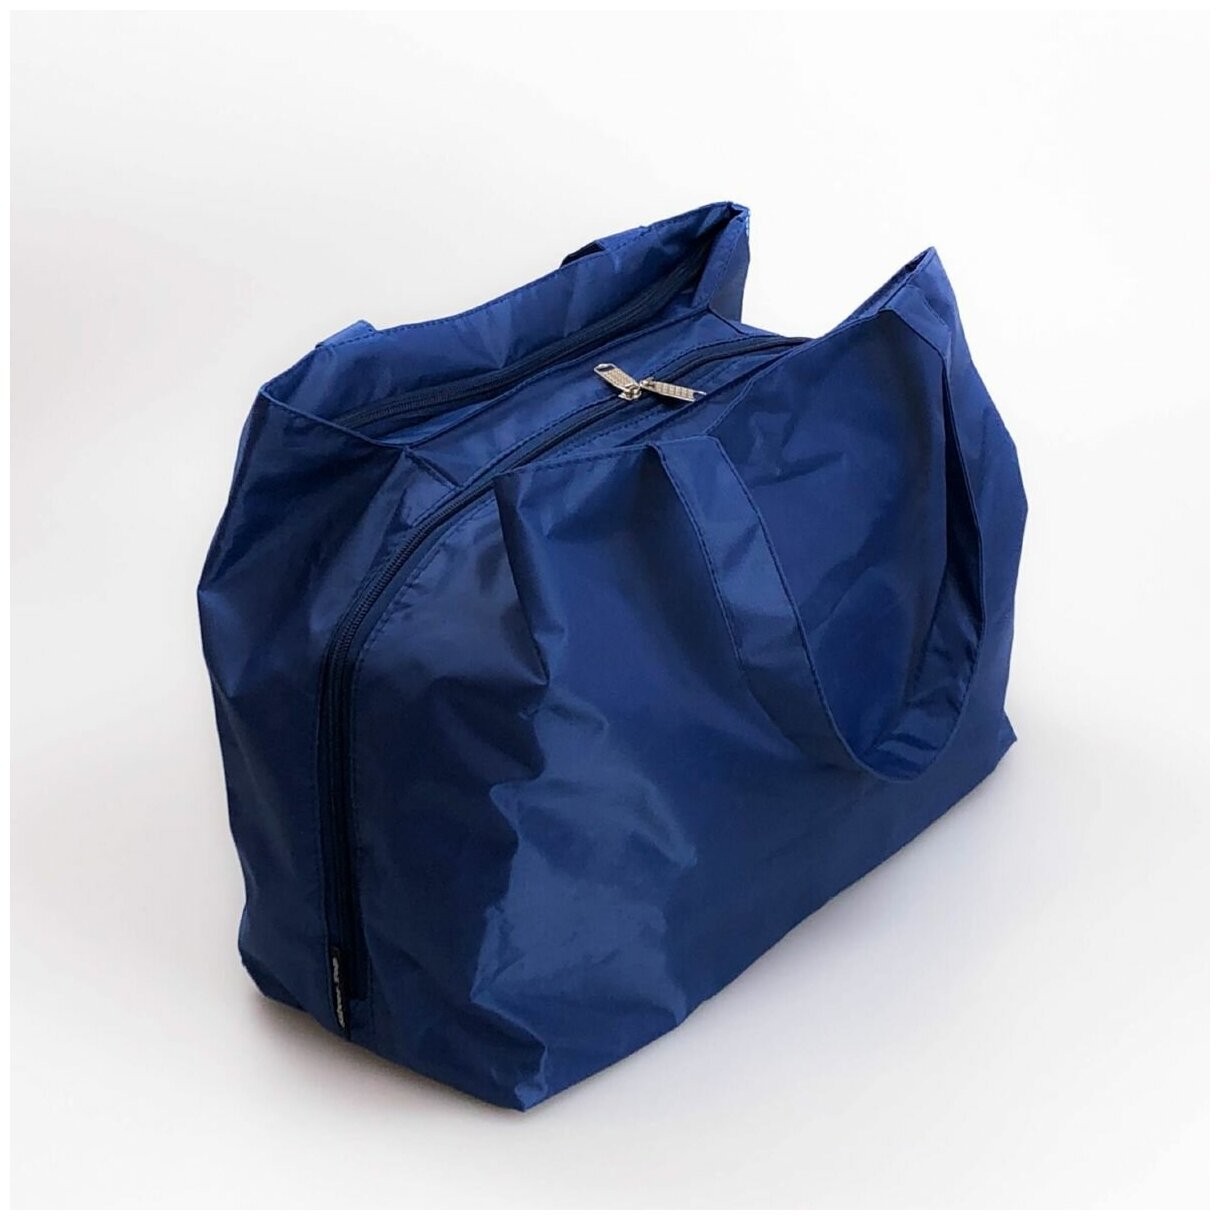 Дорожная сумка Silver Top, 3251 син/голуб цв (39*30*17) - фотография № 3